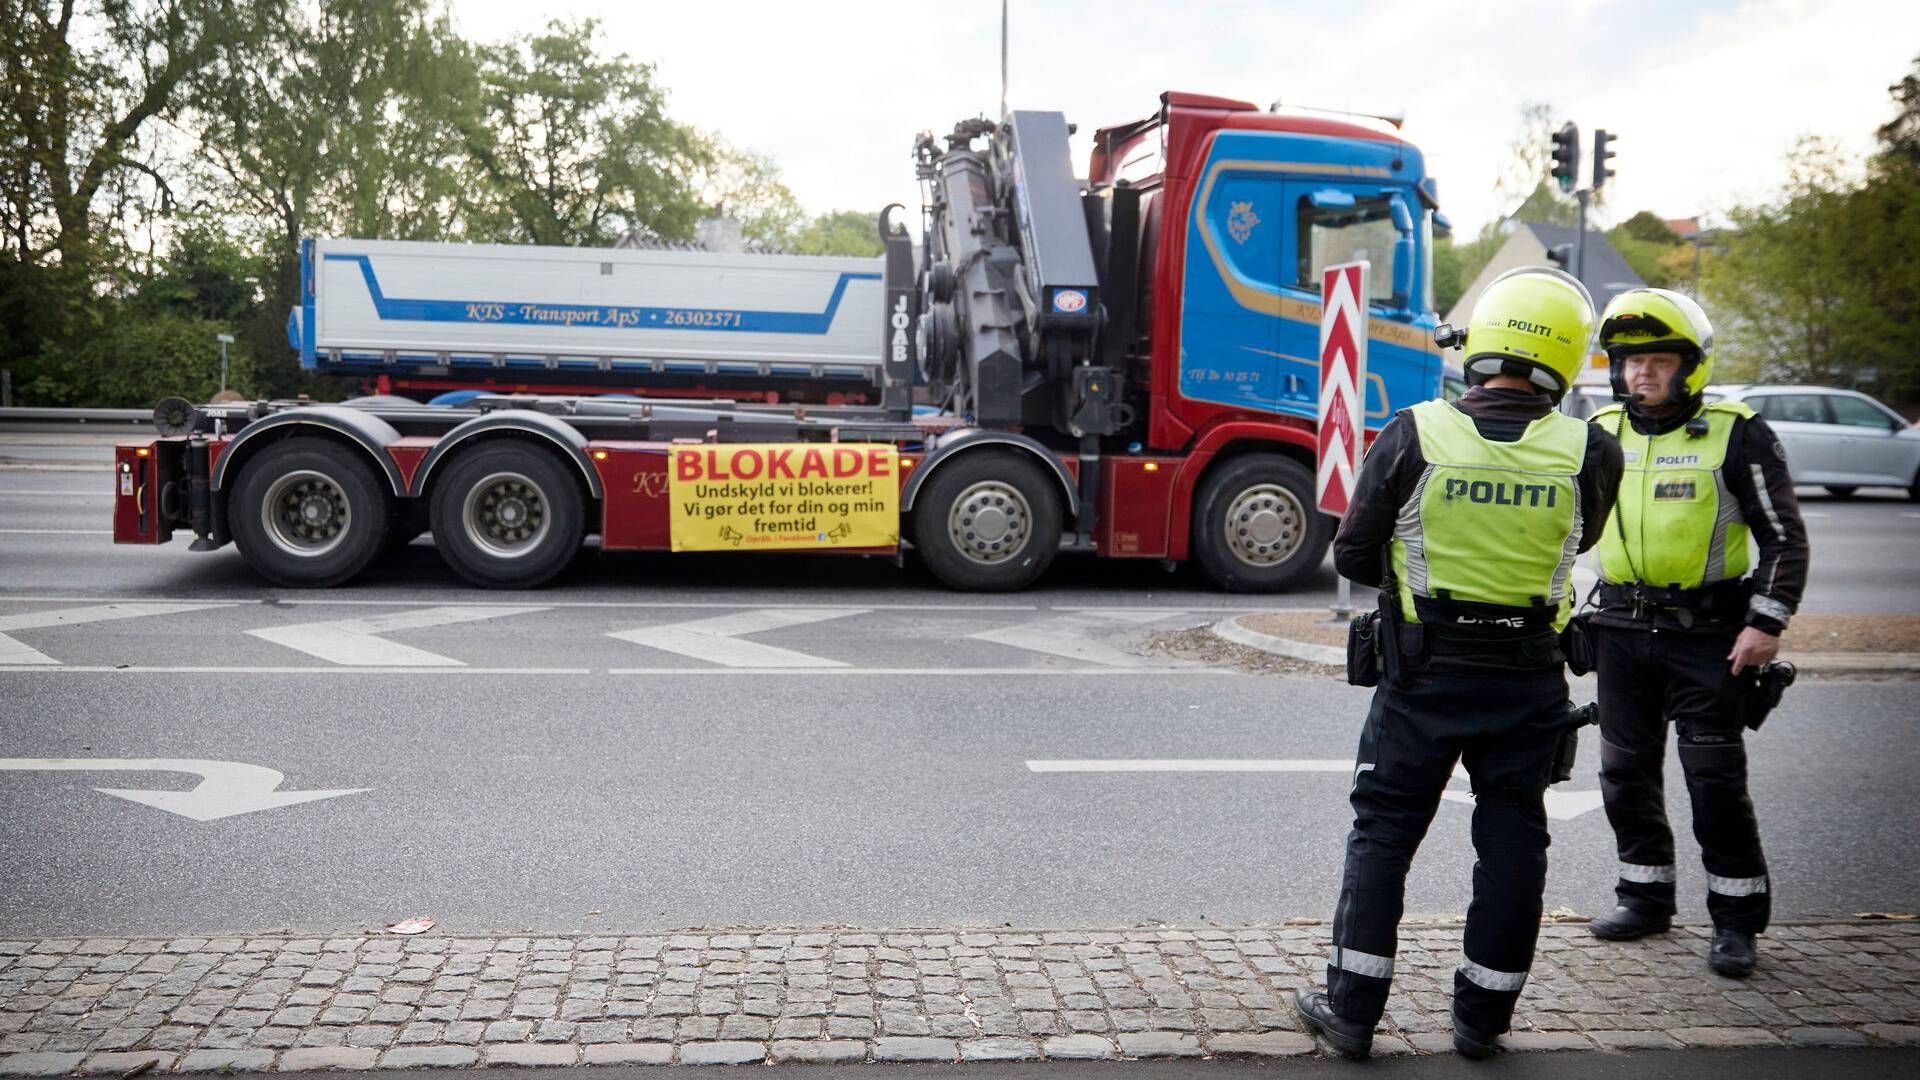 Politiet uddelte i forbindelse med lastbilblokaden bøder til chauffører på 2500 kr., hvis de standsede eller generede trafikken. | Foto: Jens Dresling/Ritzau Scanpix